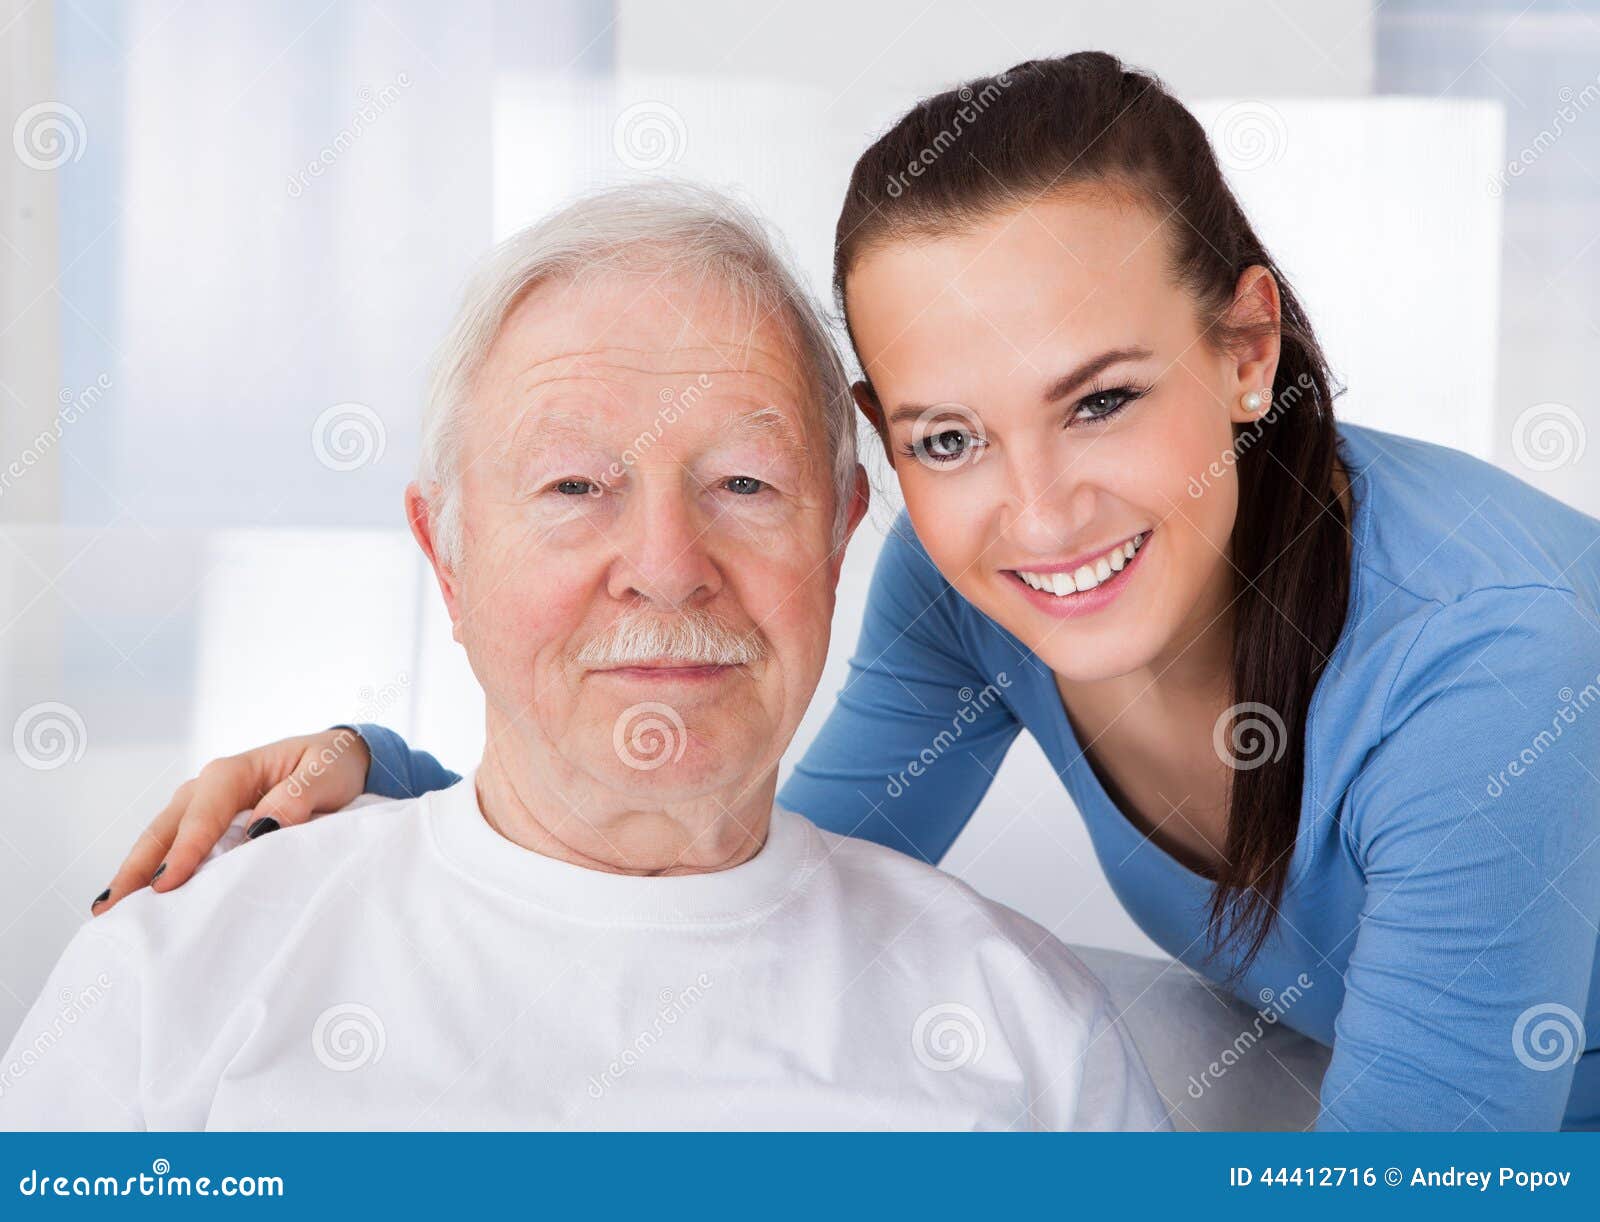 caretaker with senior man at nursing home